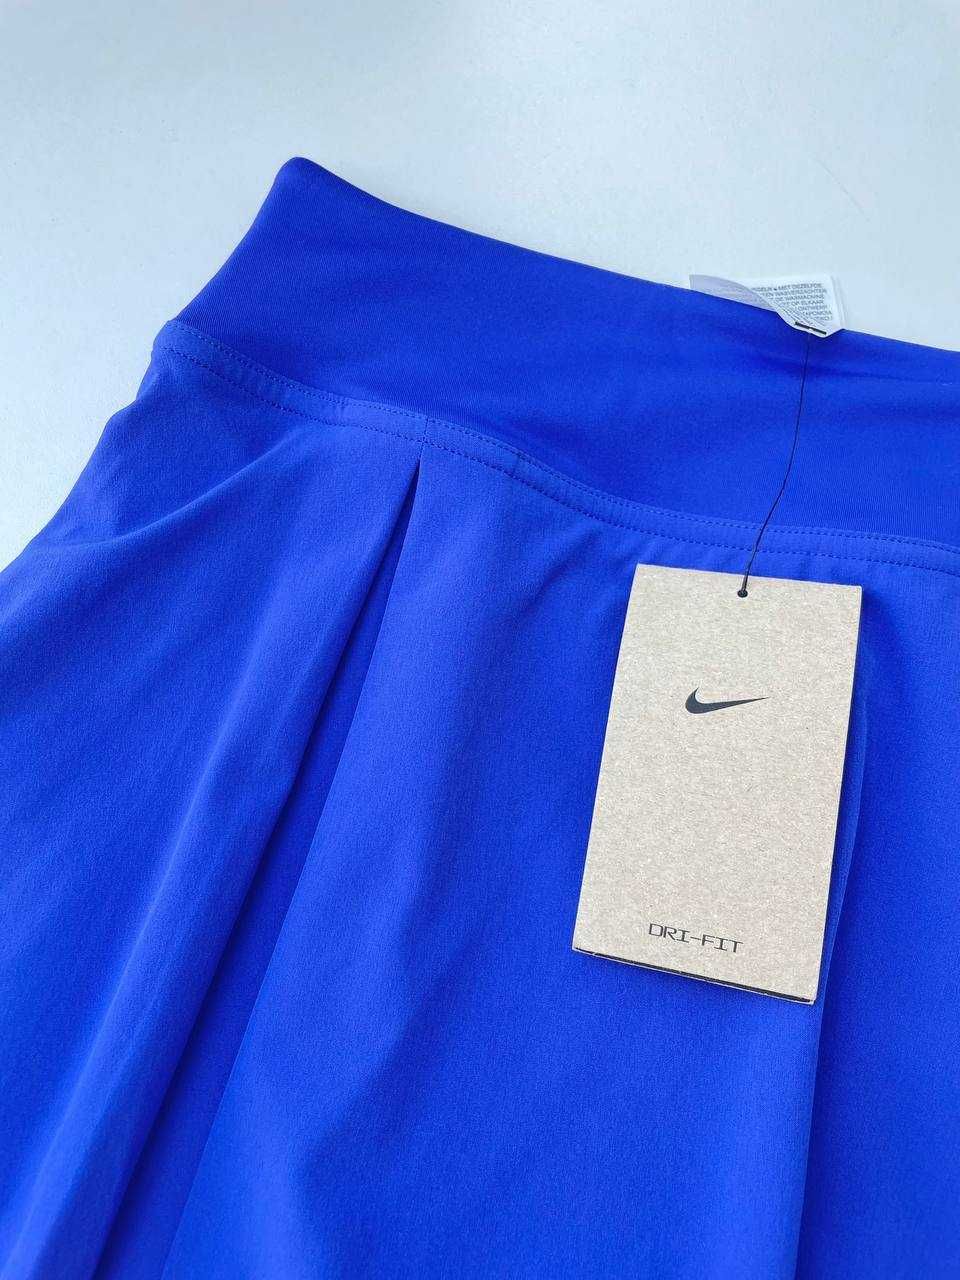 С нова спортивна спідниця шорти Nike dri- fit юбка шорты теннисная